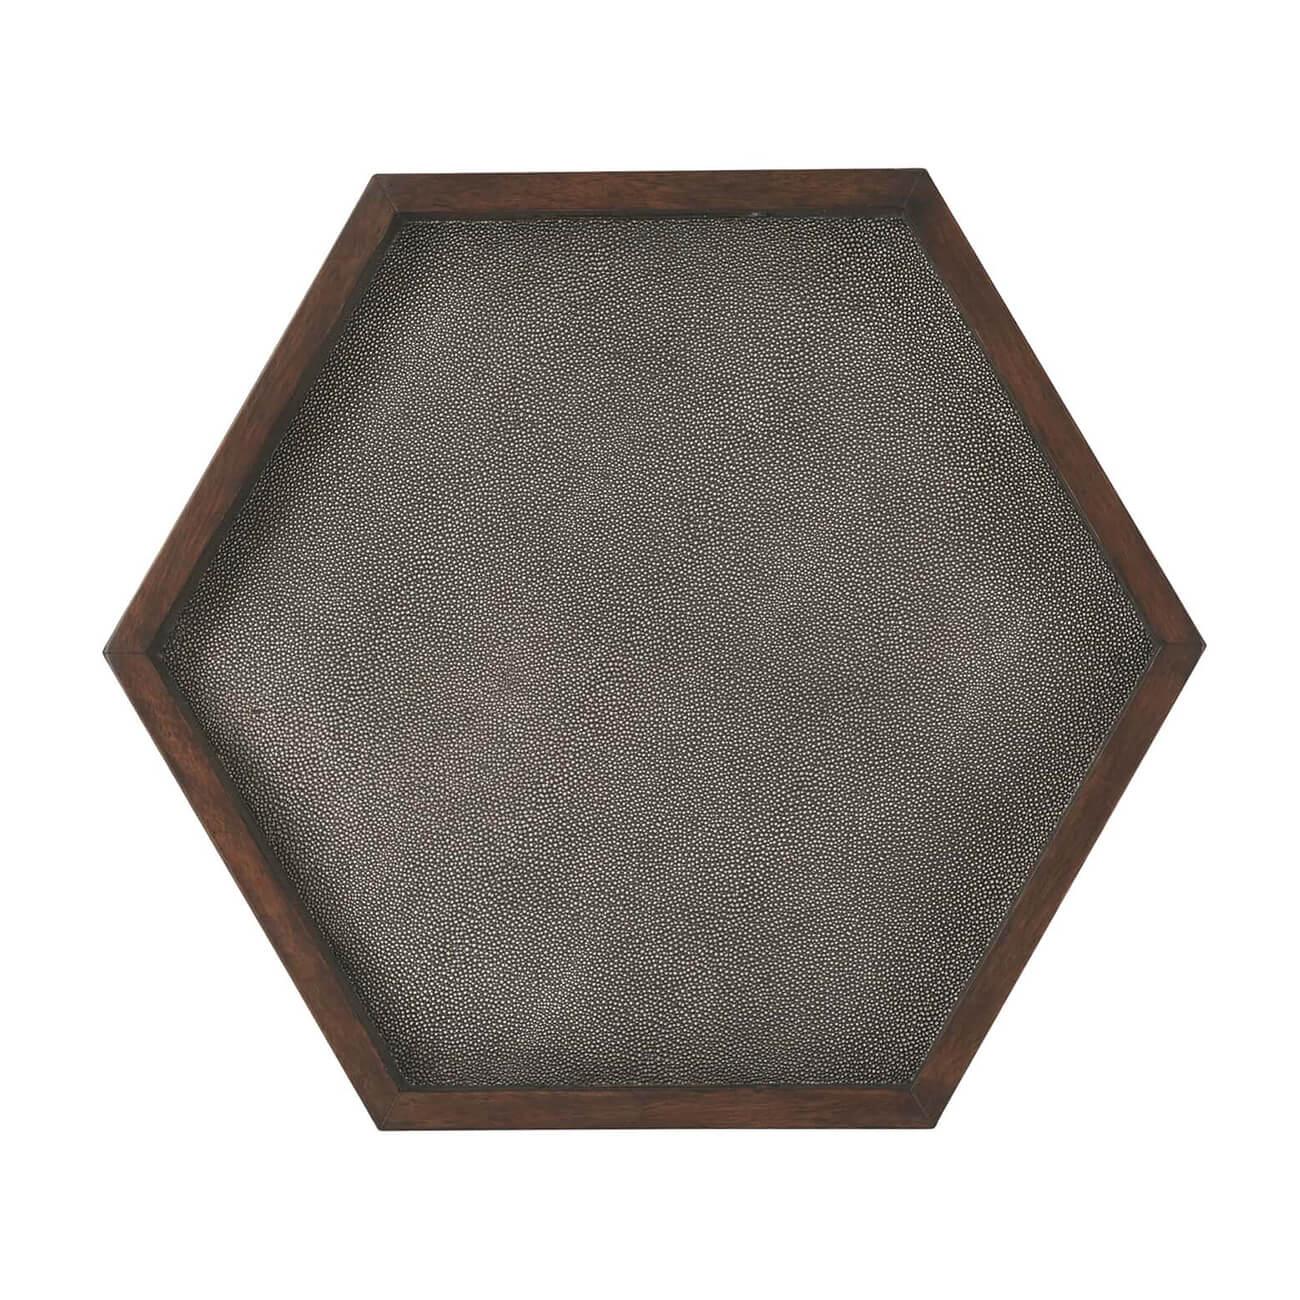 Table d'appoint hexagonale de style marocain enveloppée de faux galuchat, avec un plateau à poignée percée, des côtés en cuir gaufré de galuchat et un bord en bois poli avec des arcs en forme de trou de serrure autour des côtés.

Dimensions : 23